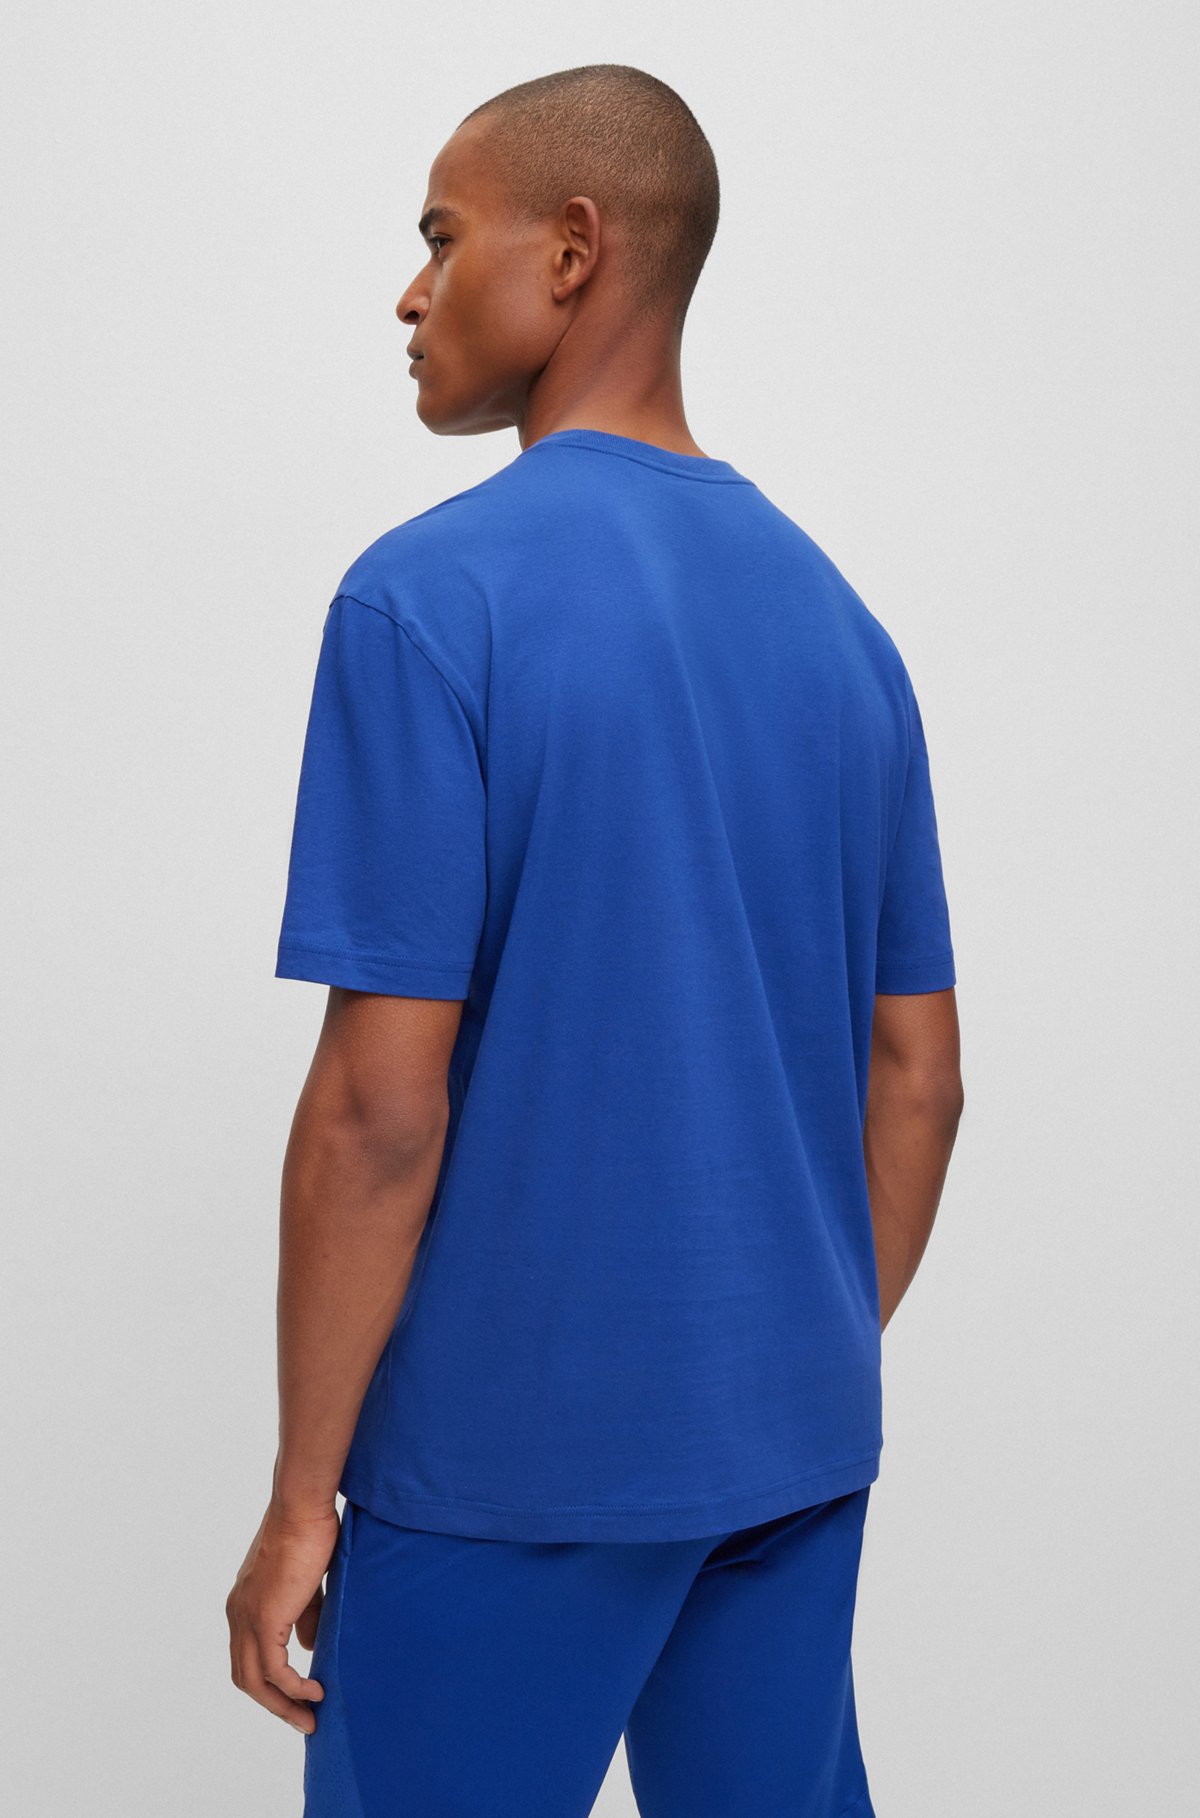 BOSS - Cotton-jersey regular-fit T-shirt with tonal logos